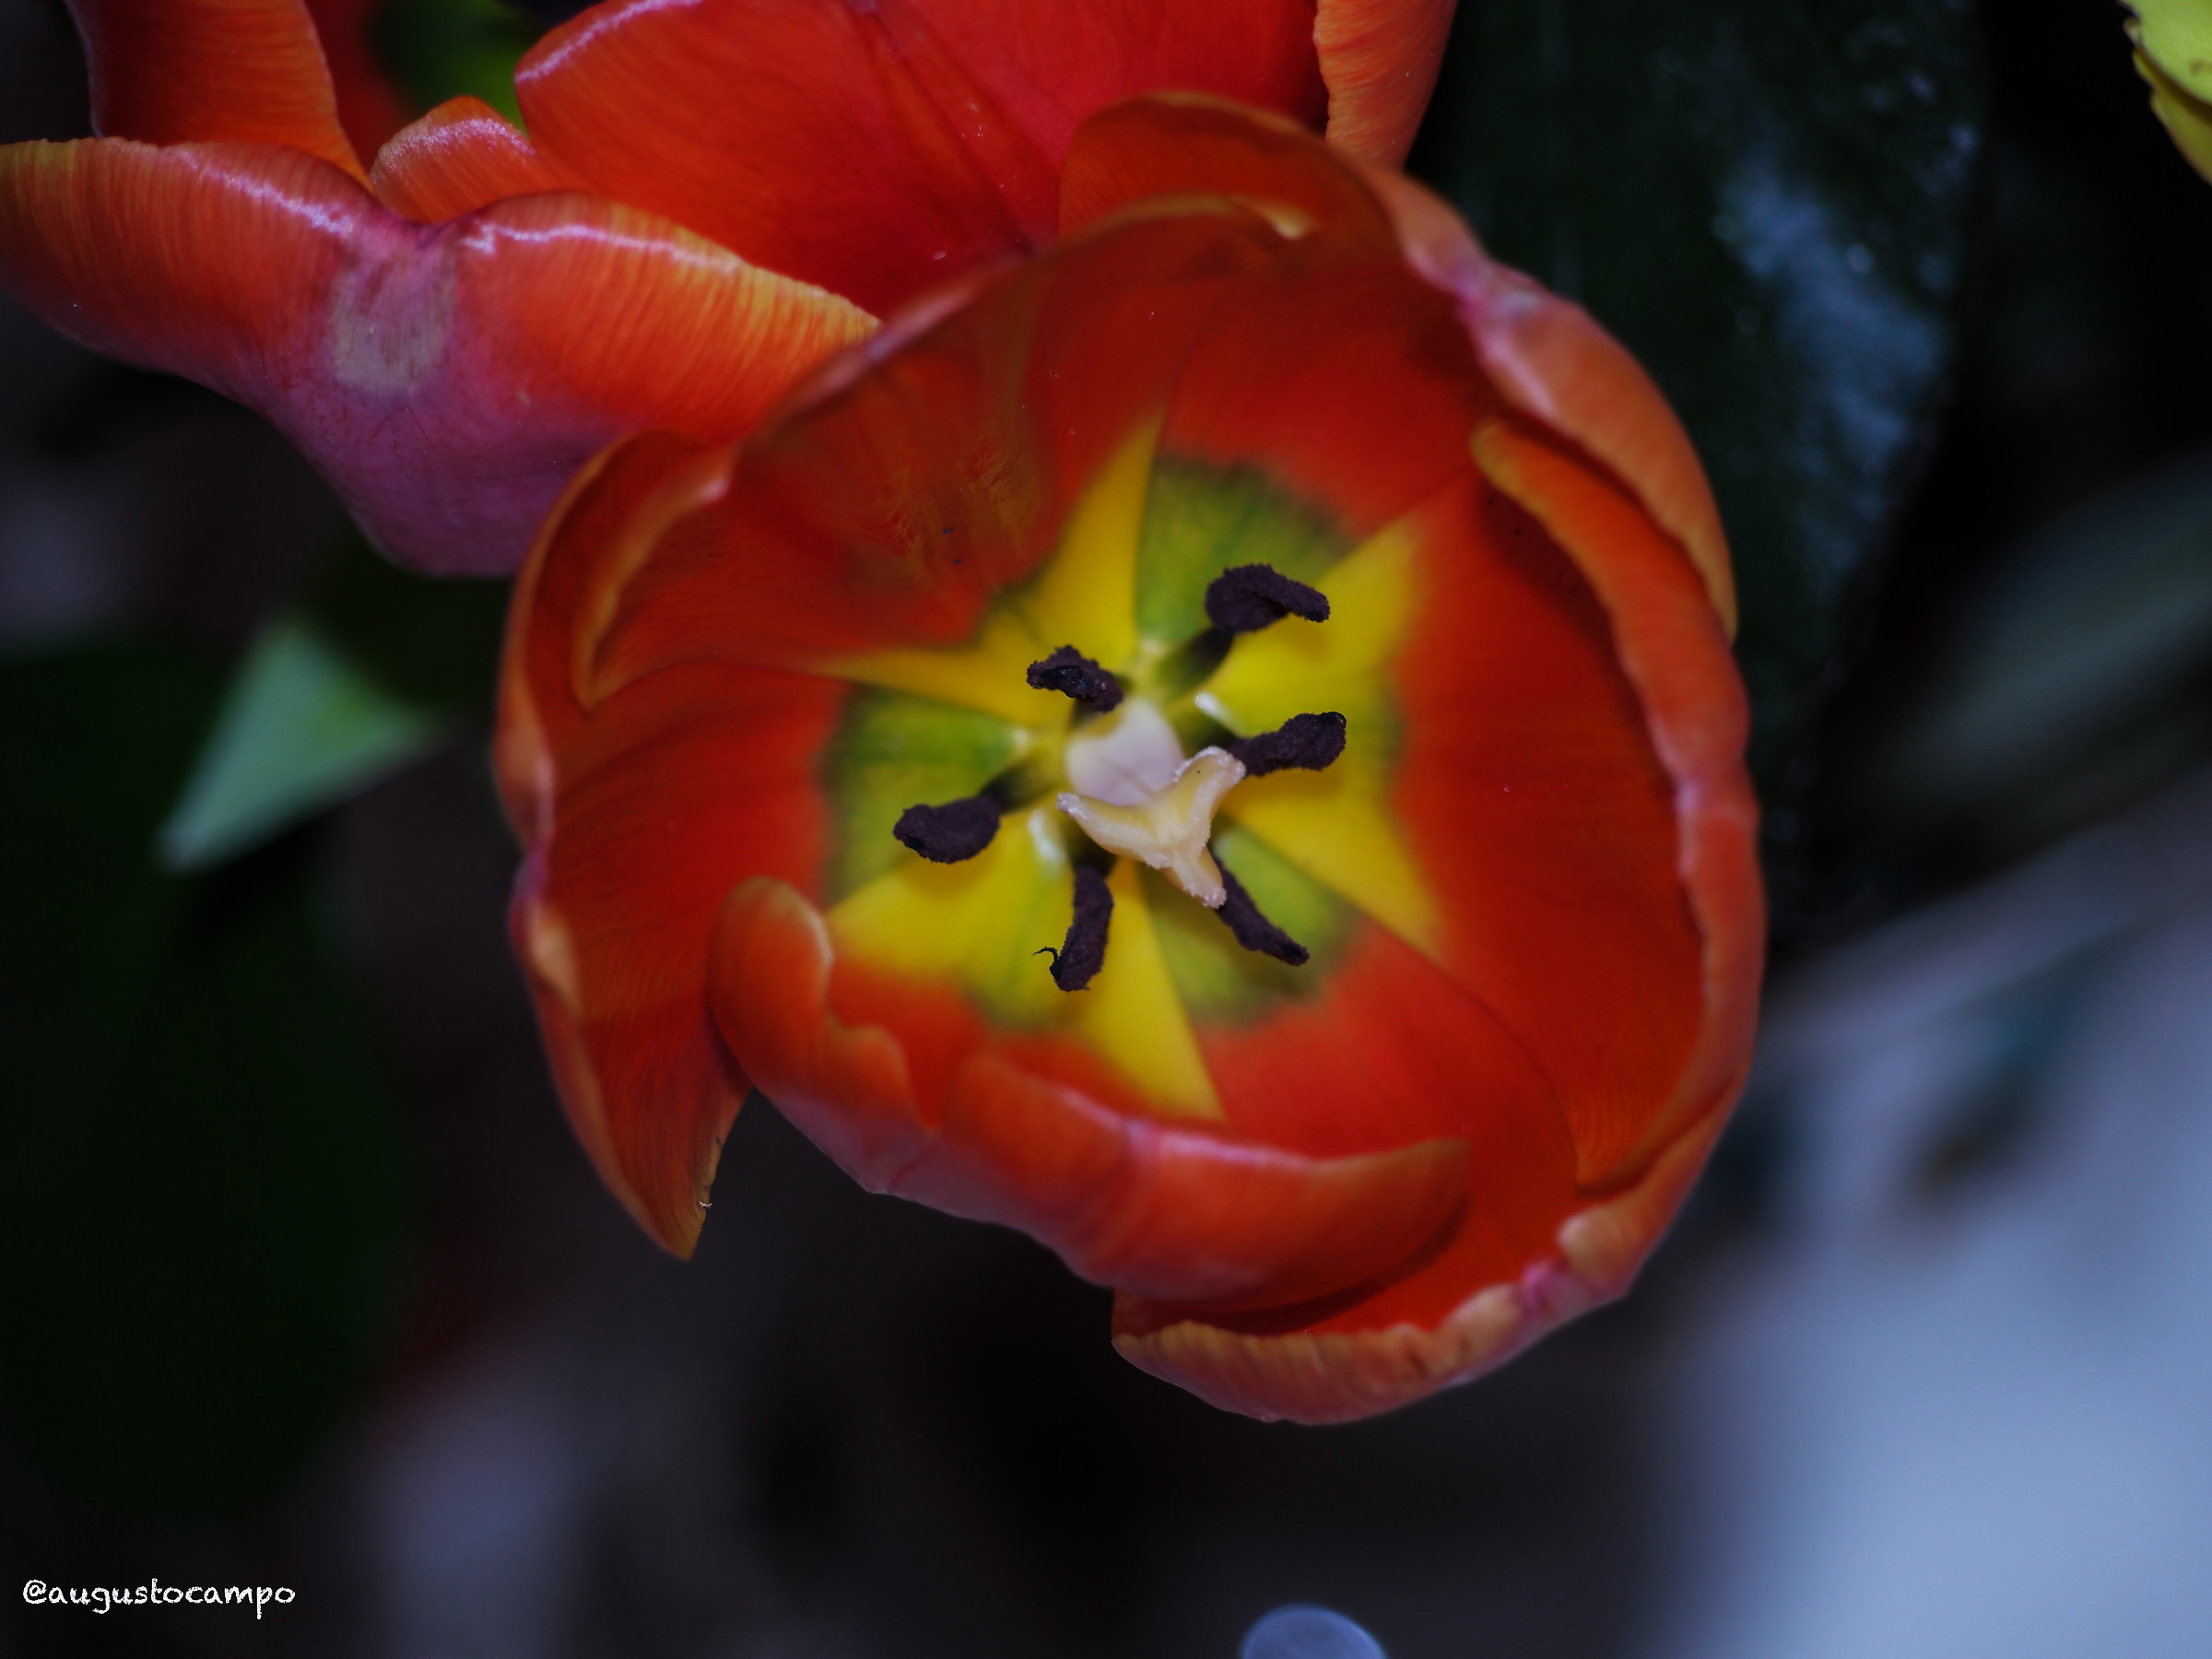 Inside a tulip...